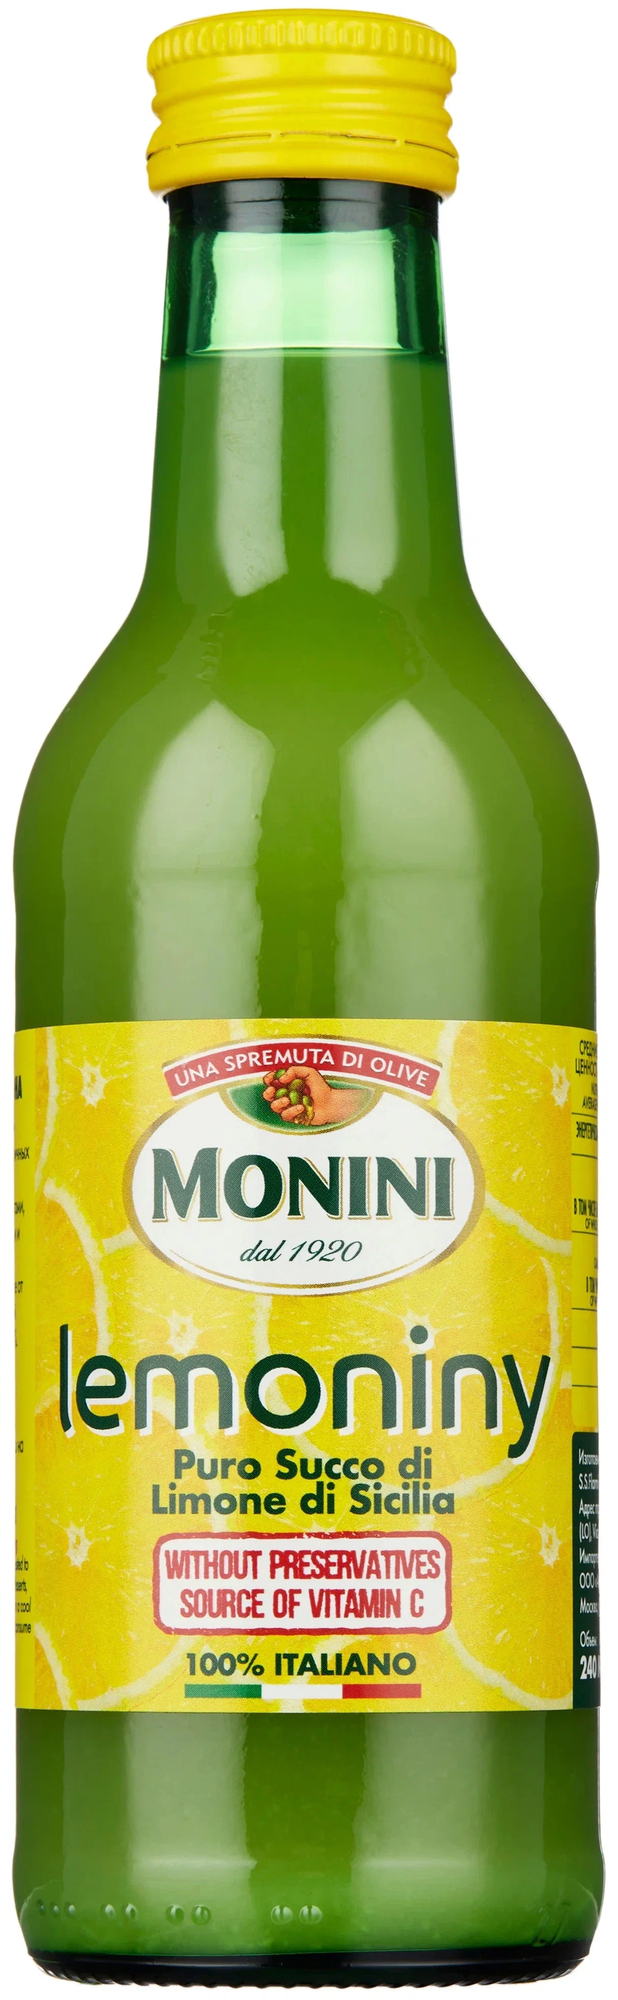 Сок сицилийского лимона Monini (Монини) Lemoniny Sicilian Lemon Juice 100 % (без консервантов), 240мл